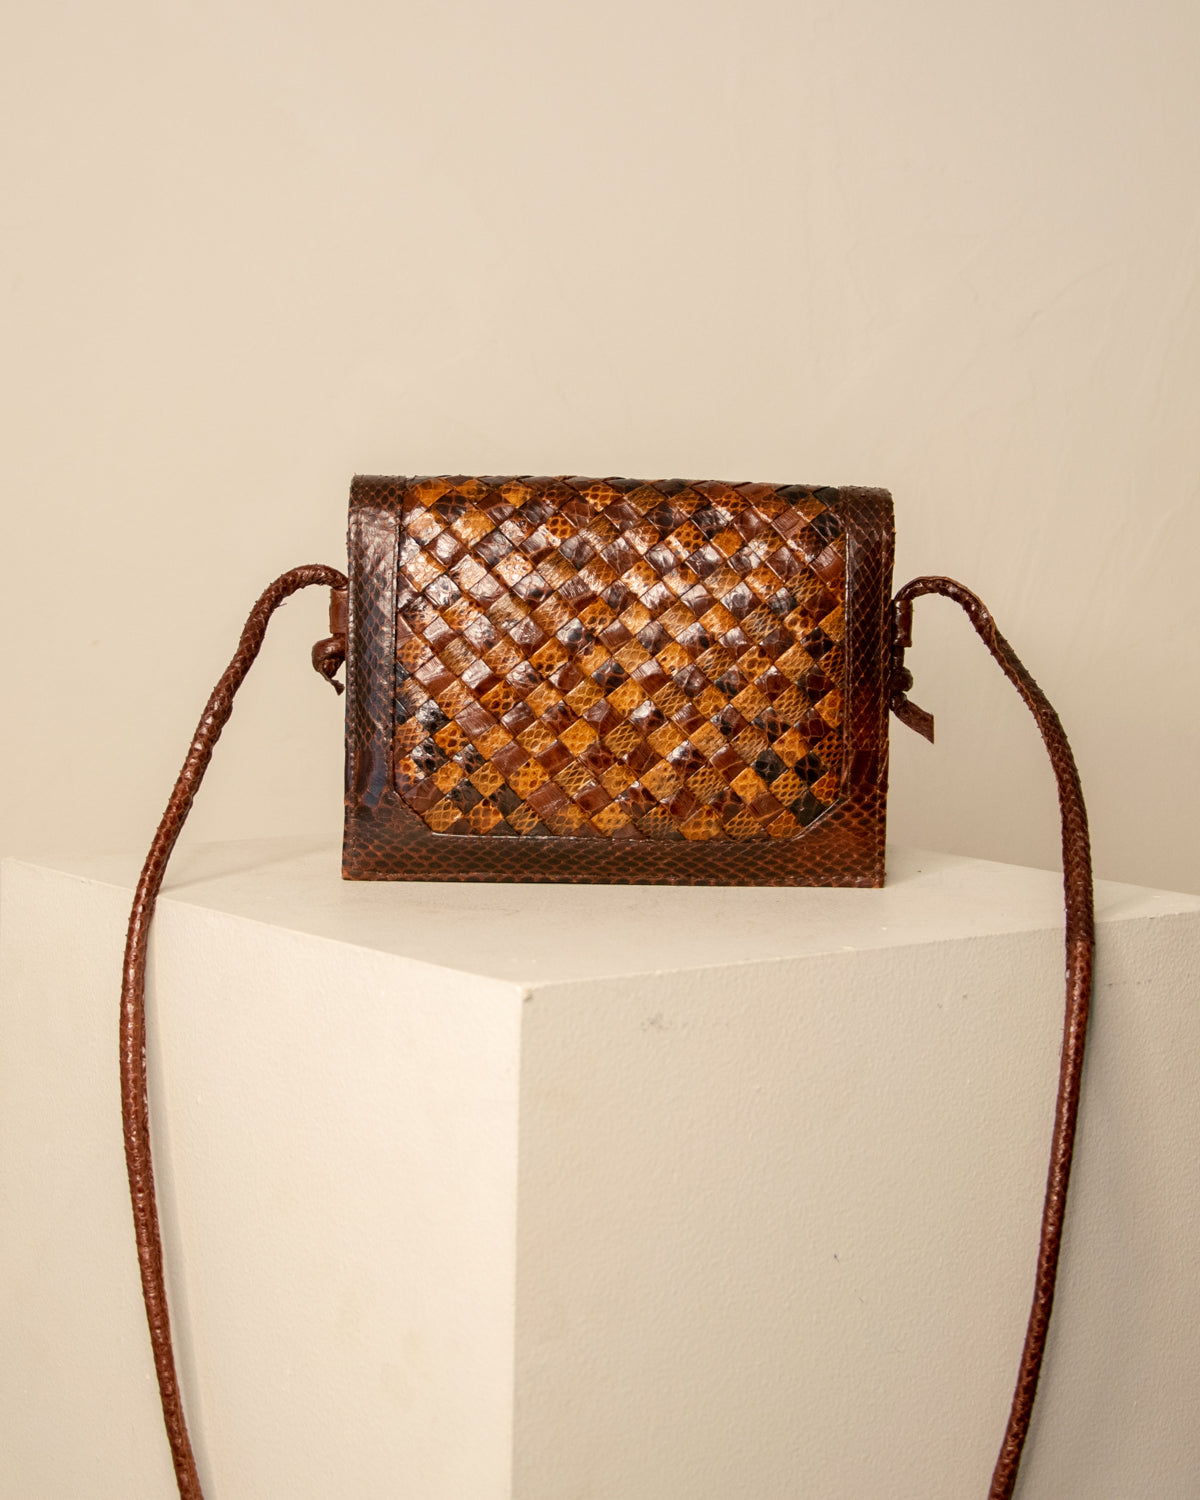 Woven Snakeskin Leather Handbag